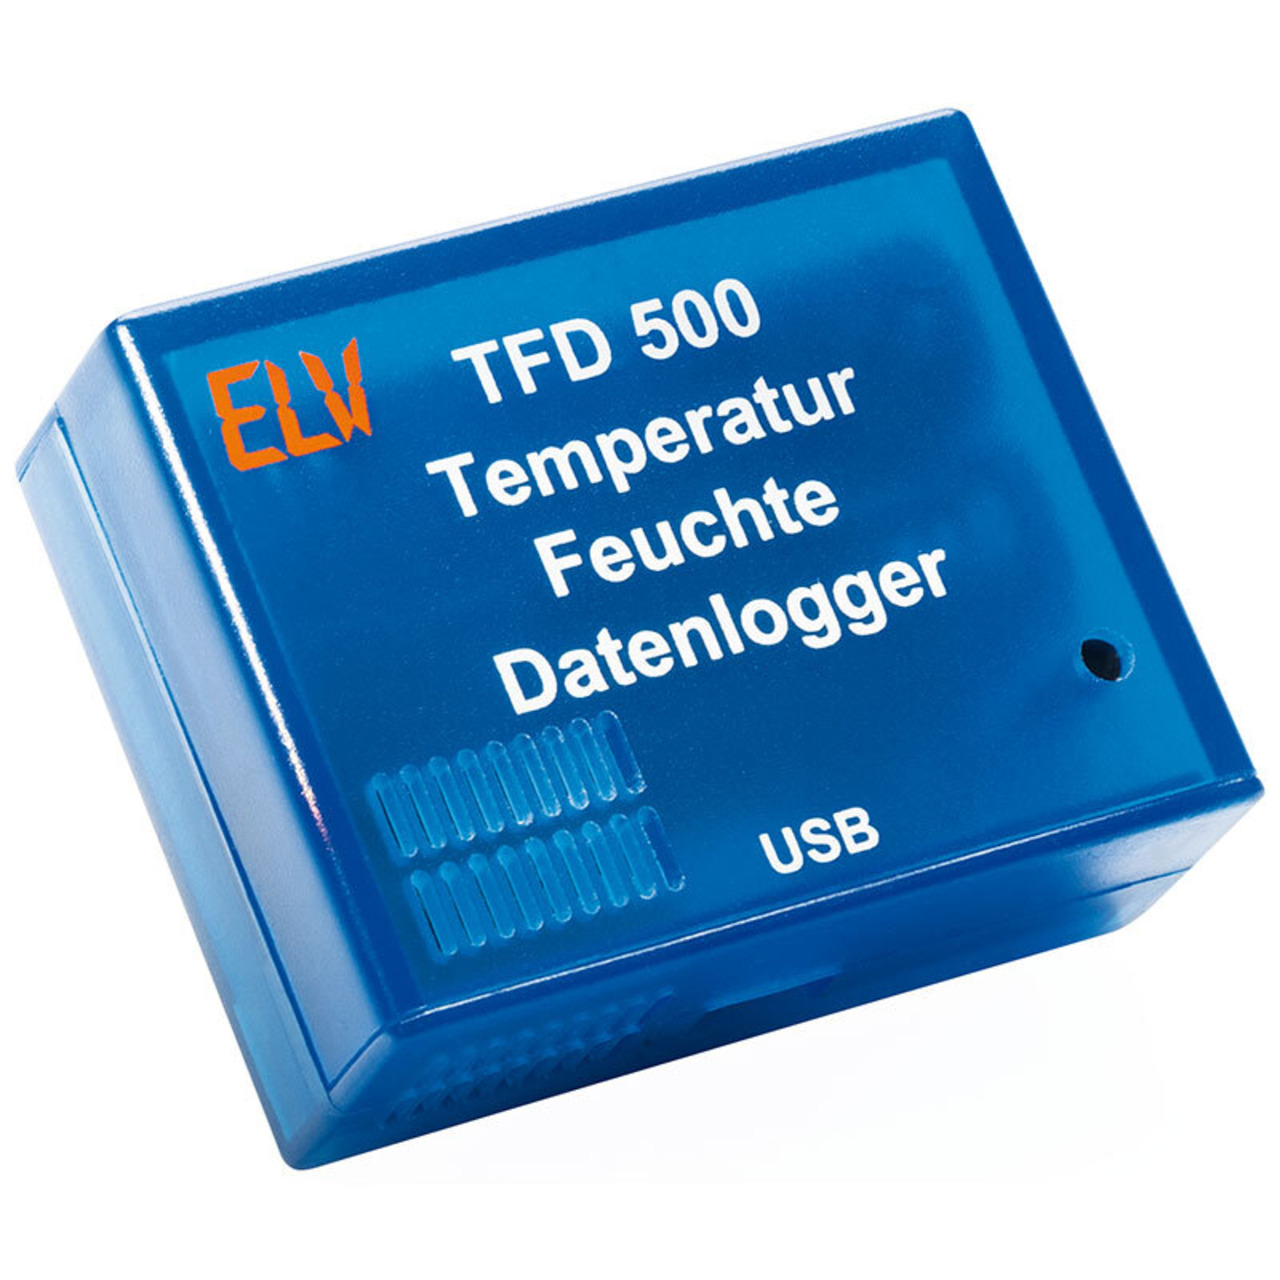 ELV Temperatur-Feuchte-Datenlogger TFD 500 unter Messtechnik